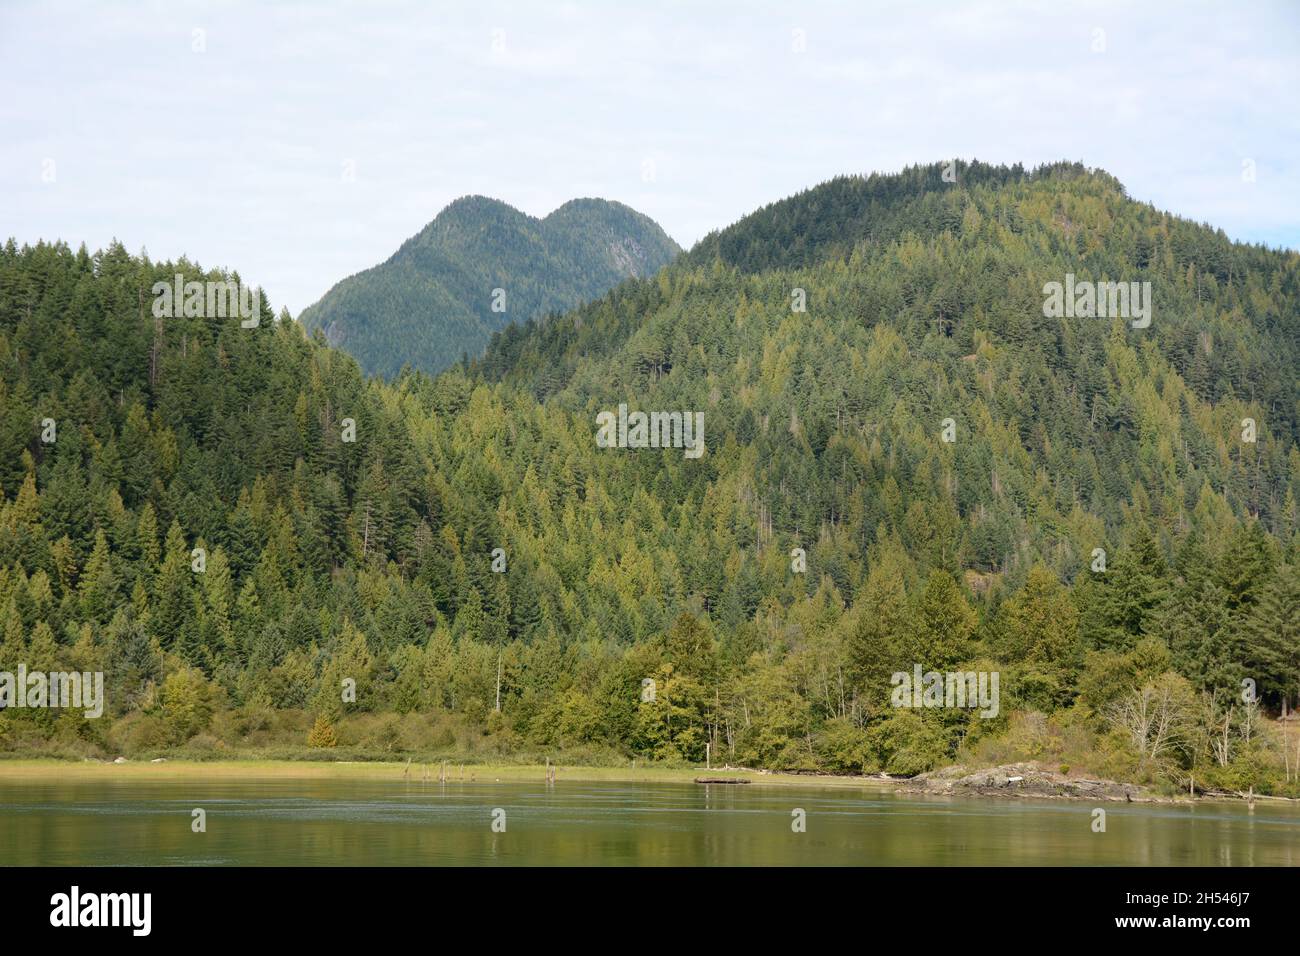 Le montagne della costa e la foresta lungo il fiume Pitt e il parco regionale Widgeon Marsh, vicino a Pitt Meadows, British Columbia, Canada. Foto Stock